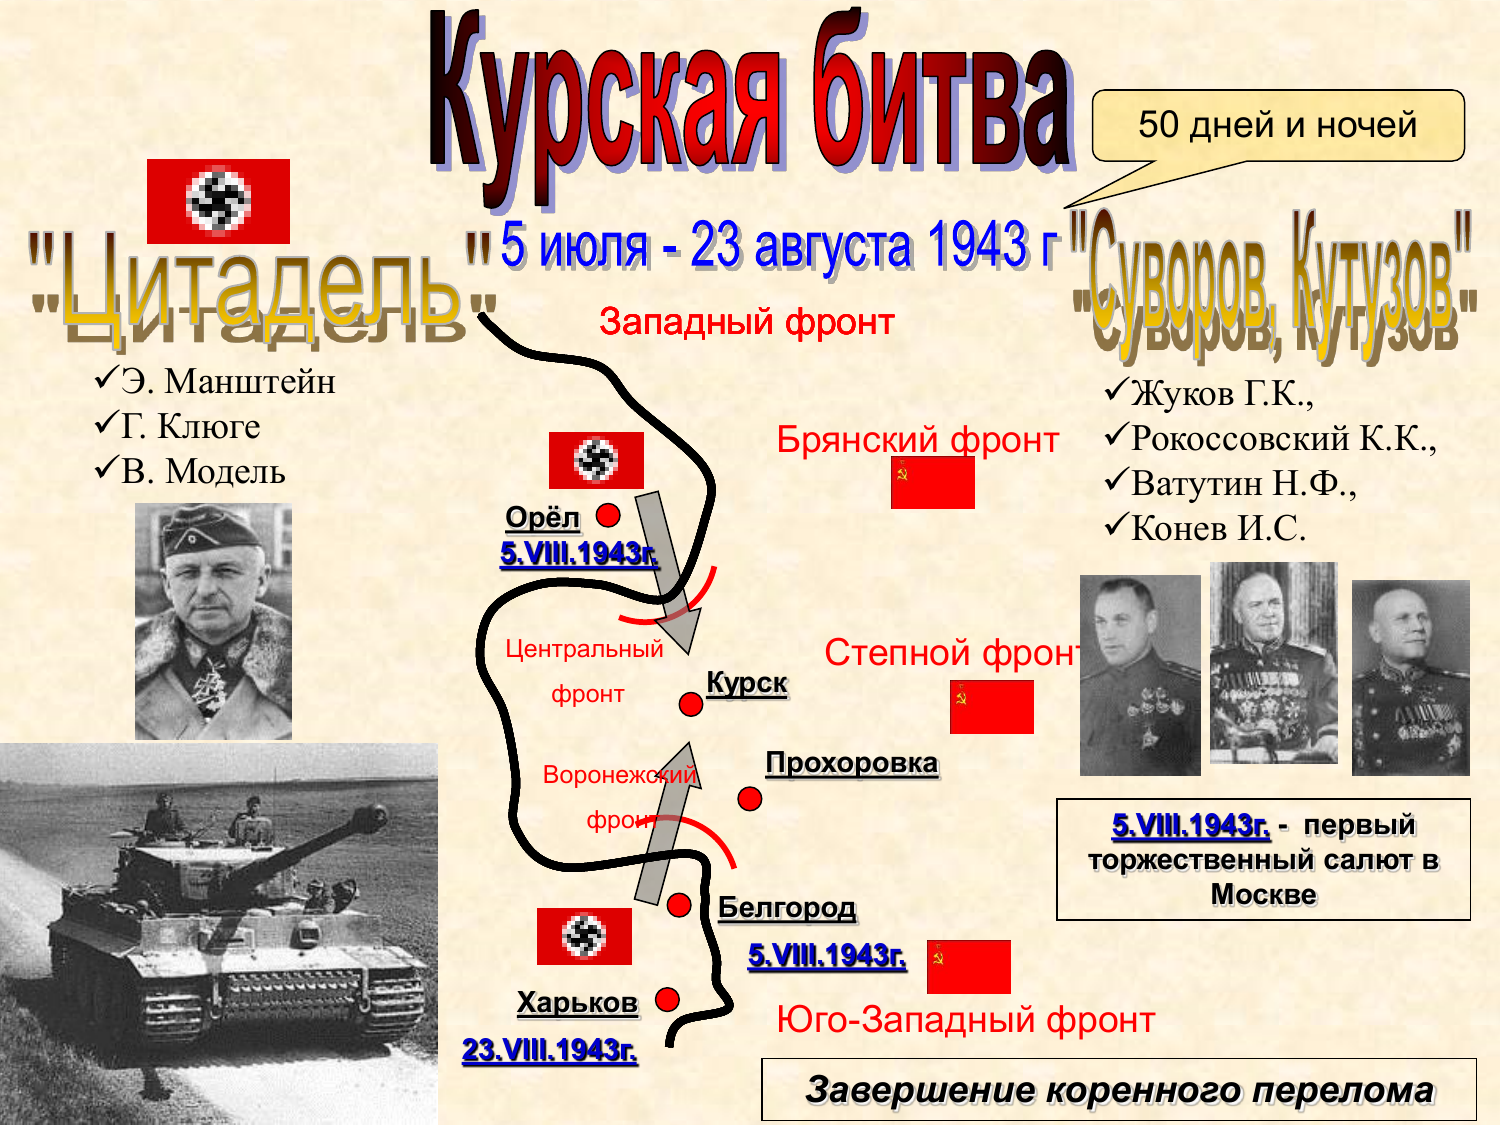 Назовите даты курской битвы. 5 Июля – 23 августа - Курская битва.. Курская битва июль август 1943. Битва на Курской дуге (1943 год). Курская дуга 5 июля 23 августа 1943.